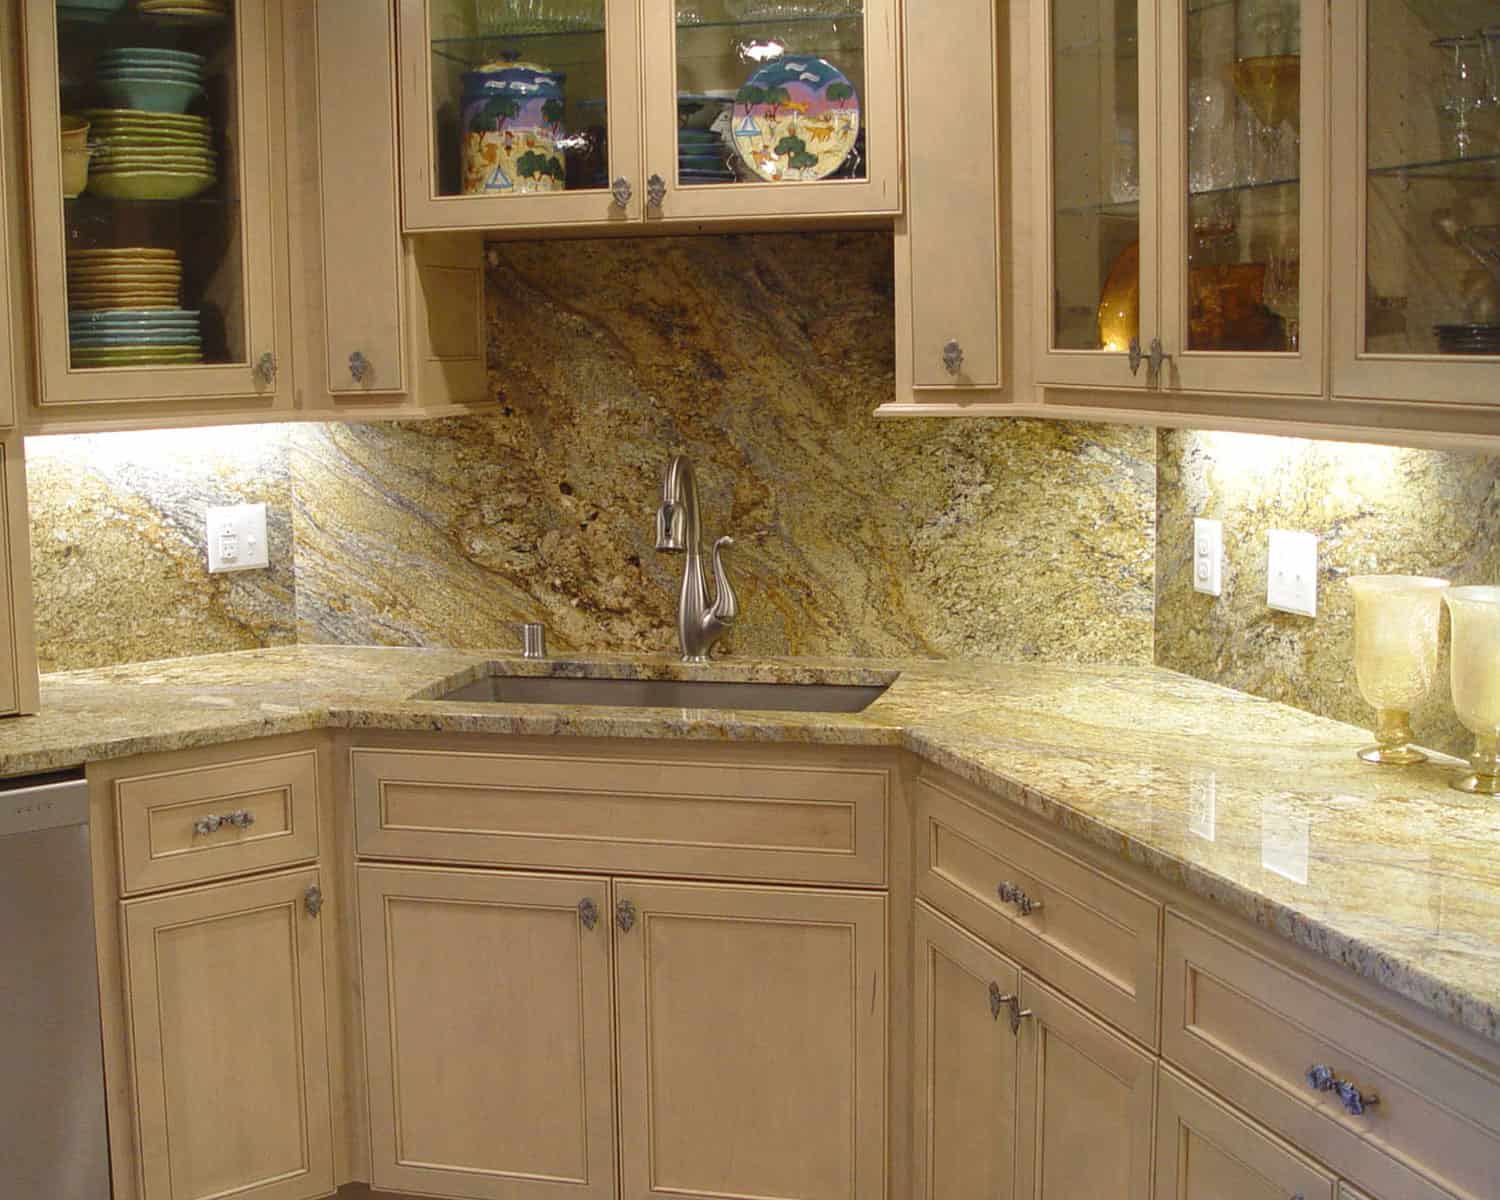 Lemel Homes Remodeling - Kitchen sink remodel after